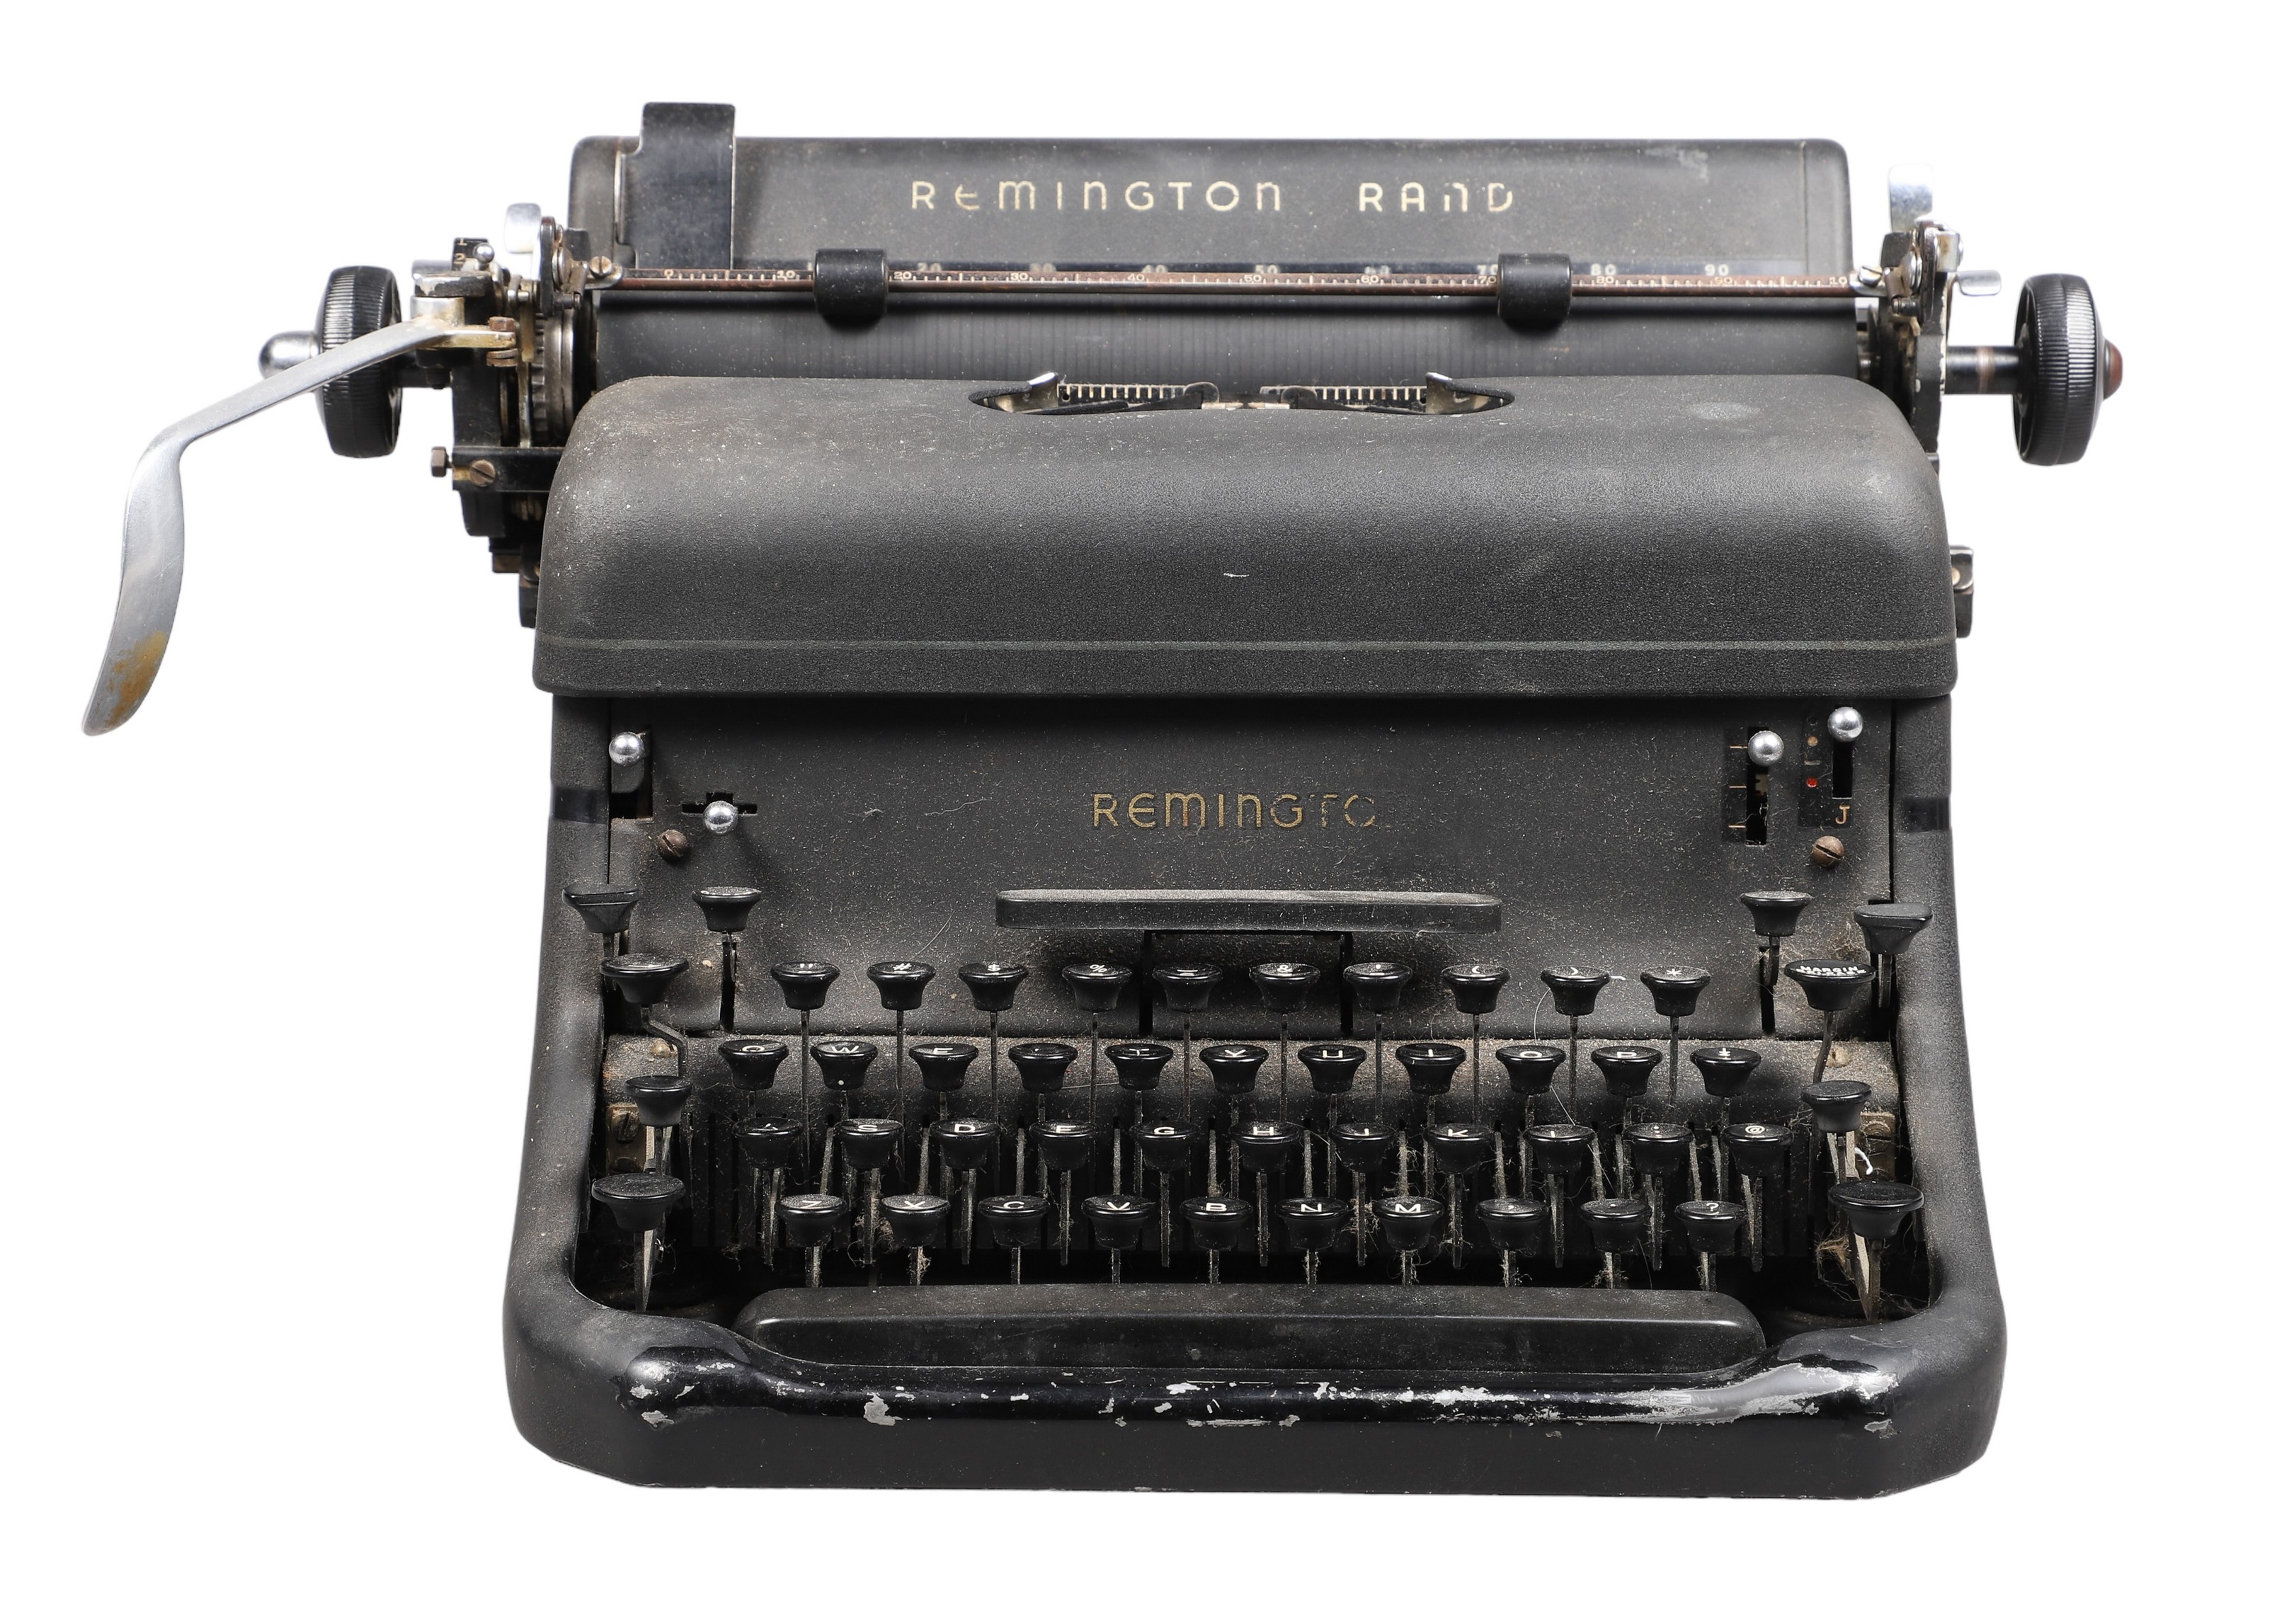 Vintage Remington Rand typewriter  2e11c4